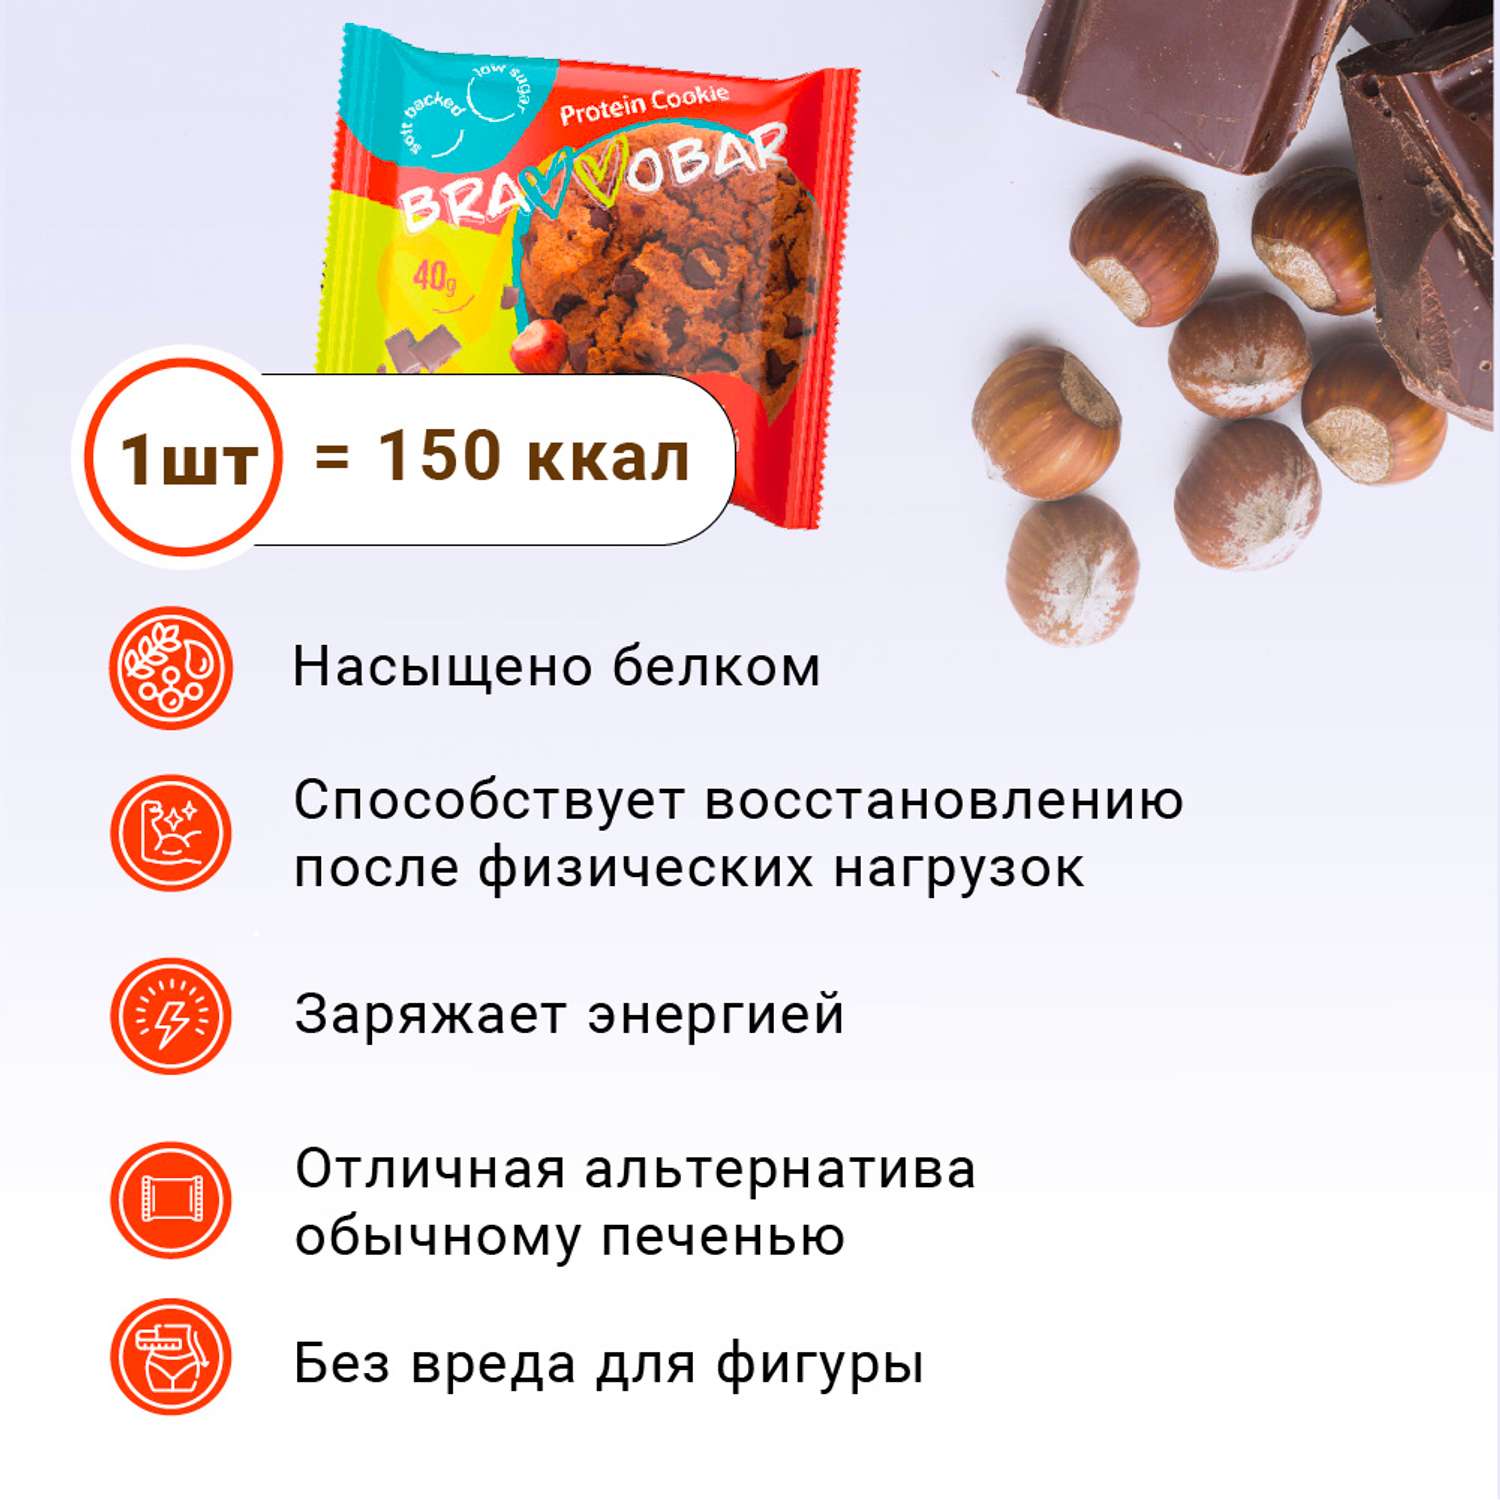 Печенье протеиновое BRAVVOBAR шоколадно-ореховый вкус 12 x 40 г - фото 2